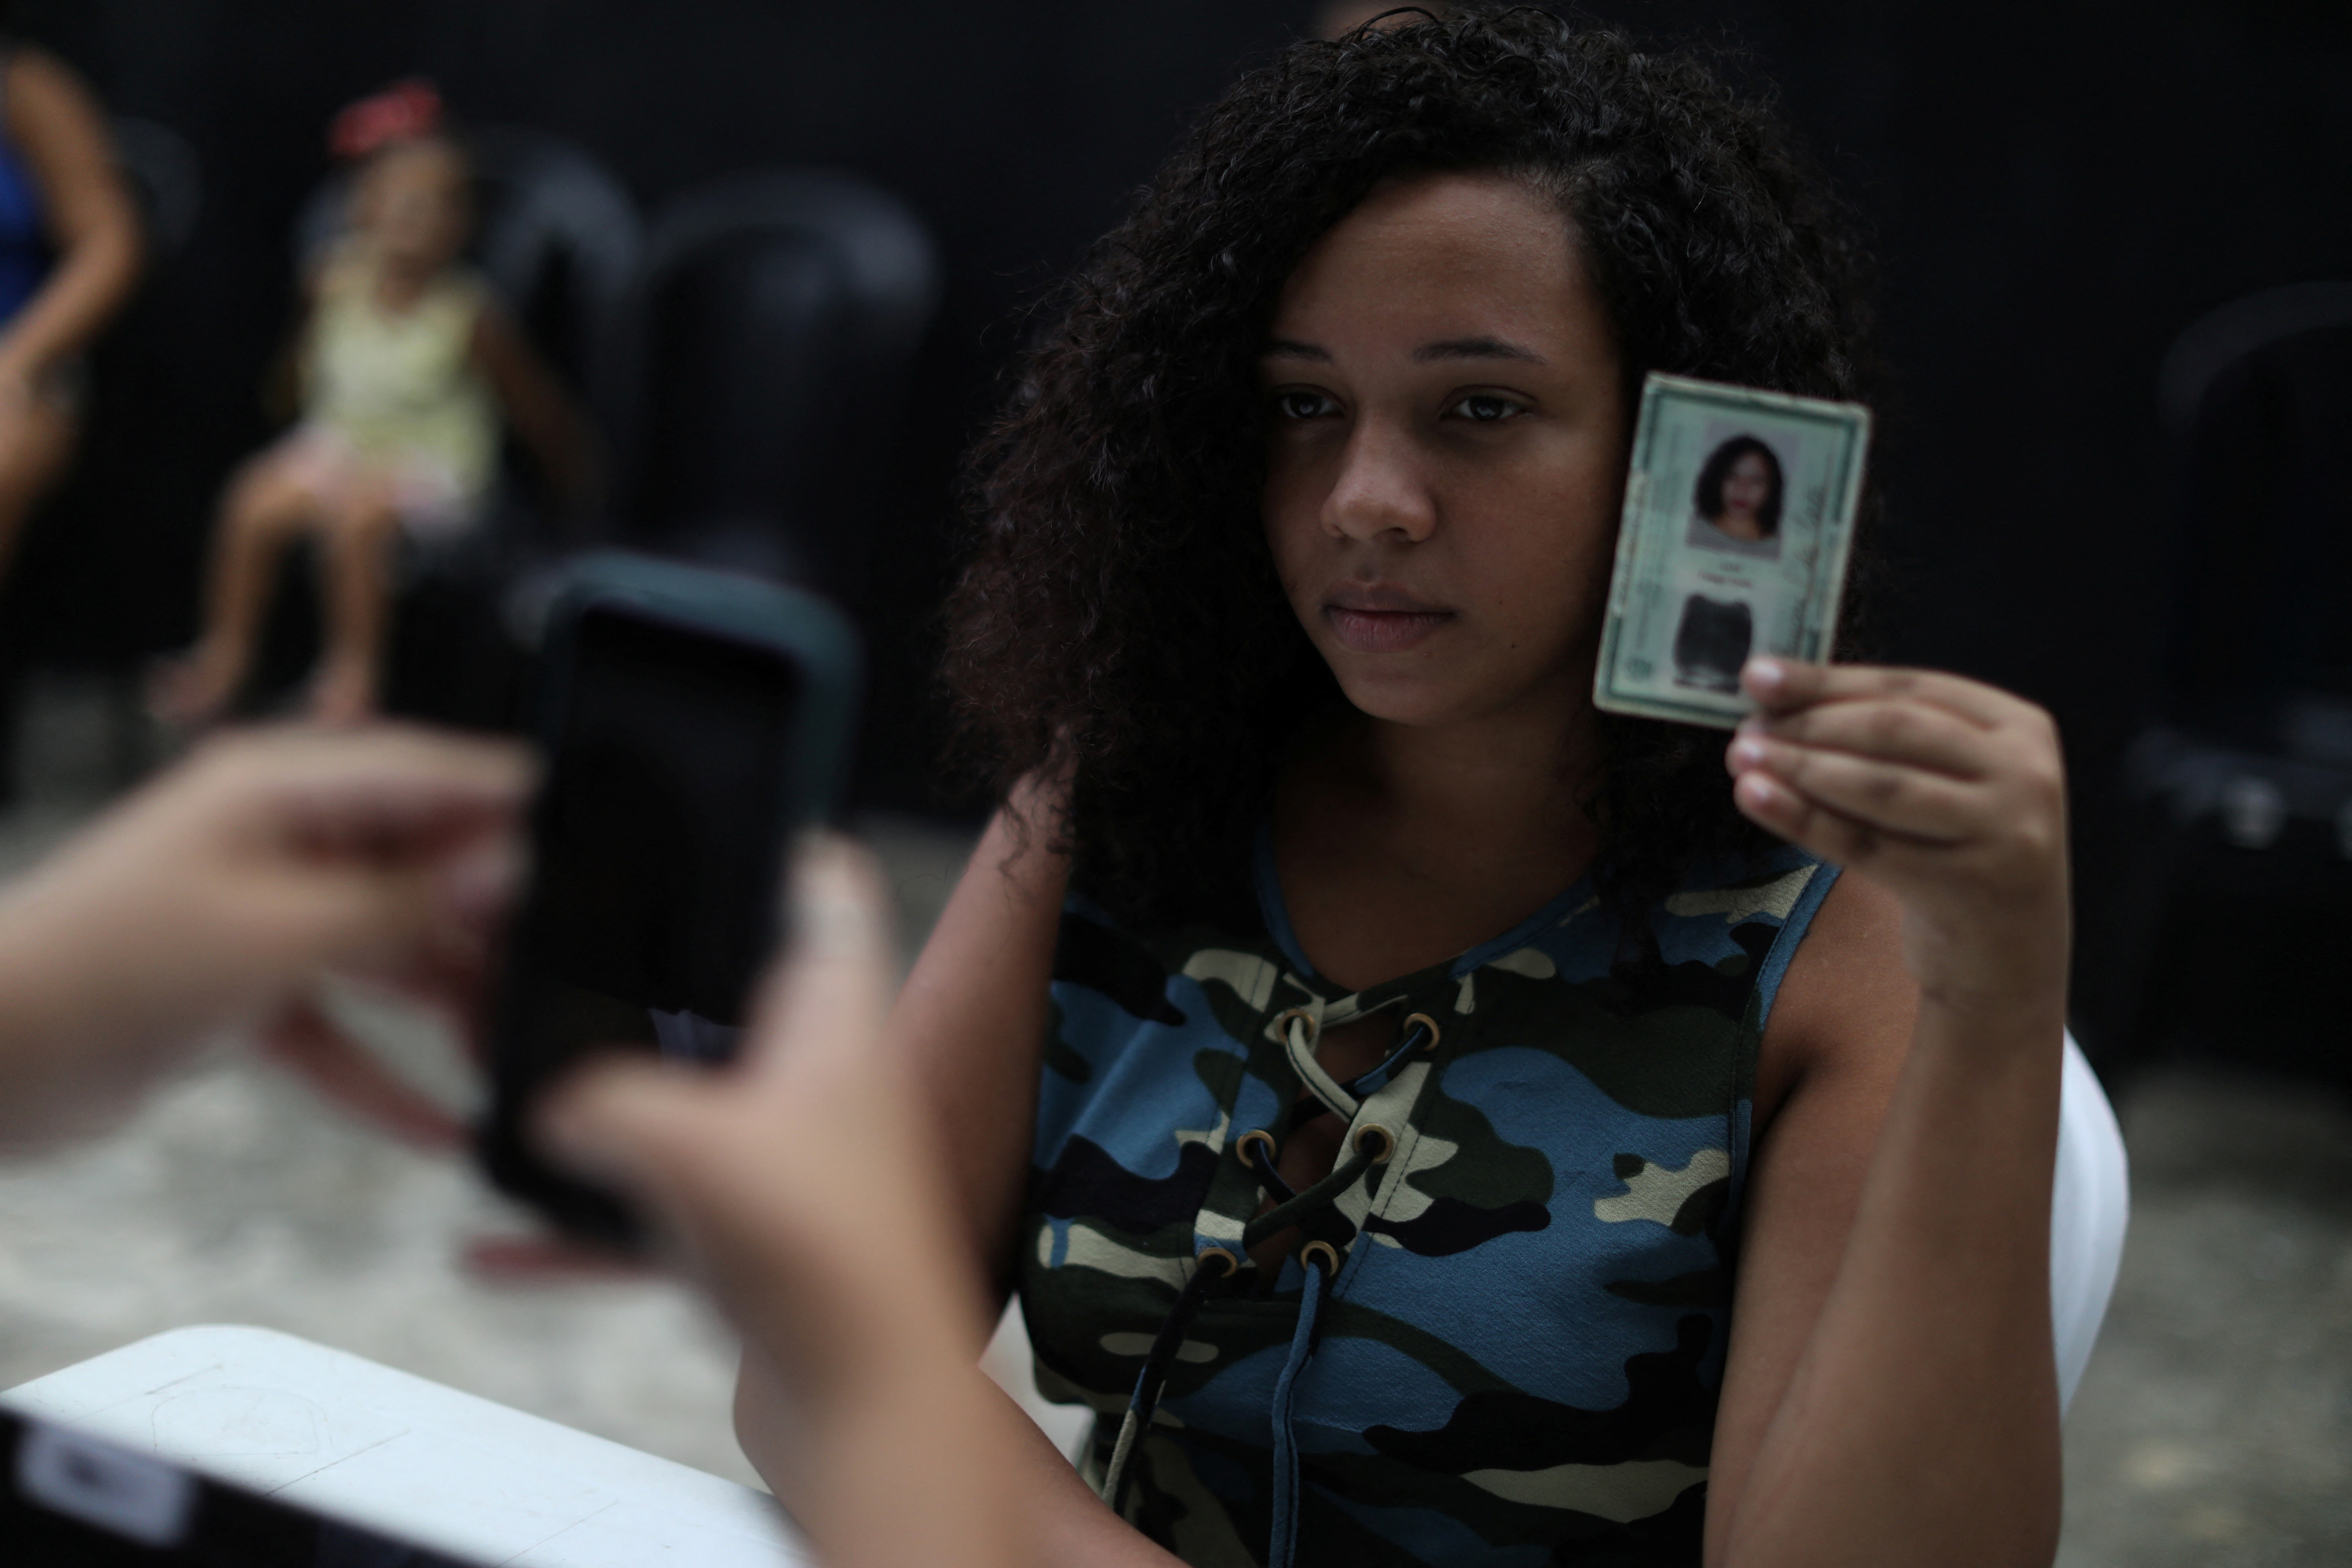 Youth vote registration for Brazil’s upcoming elections in Sao Joao de Meriti in Rio de Janeiro state